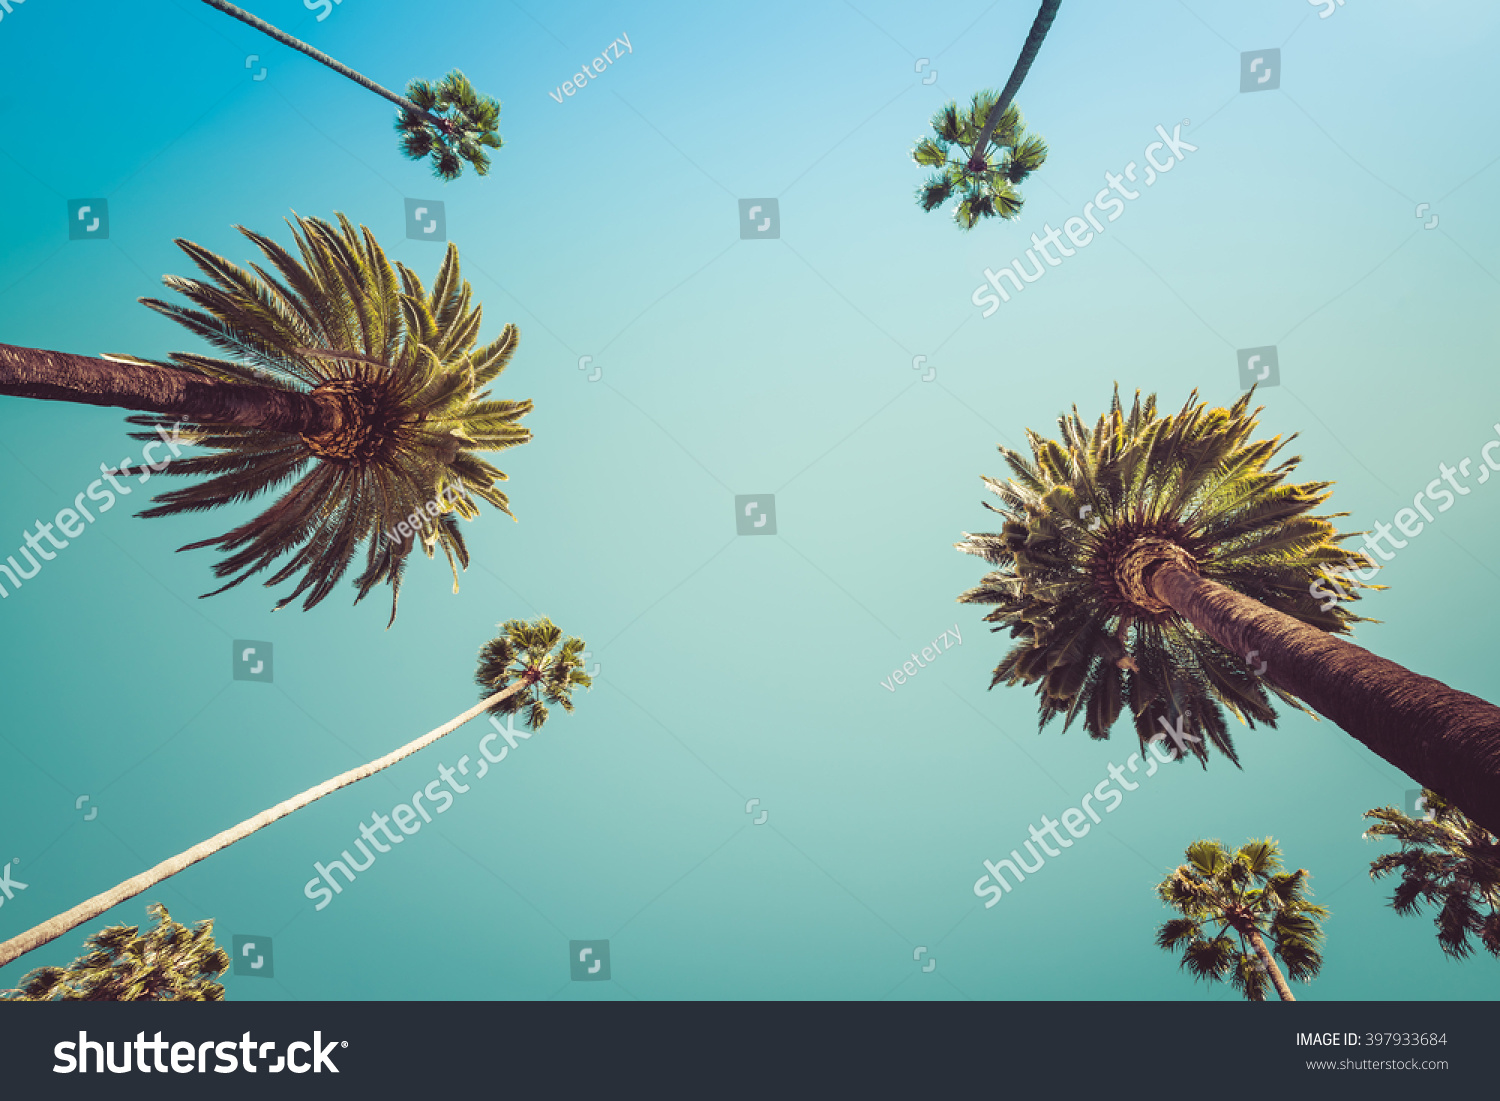 Redeo Los Angeles Vintge Palm Trees Vintage - clear summer skies #397933684